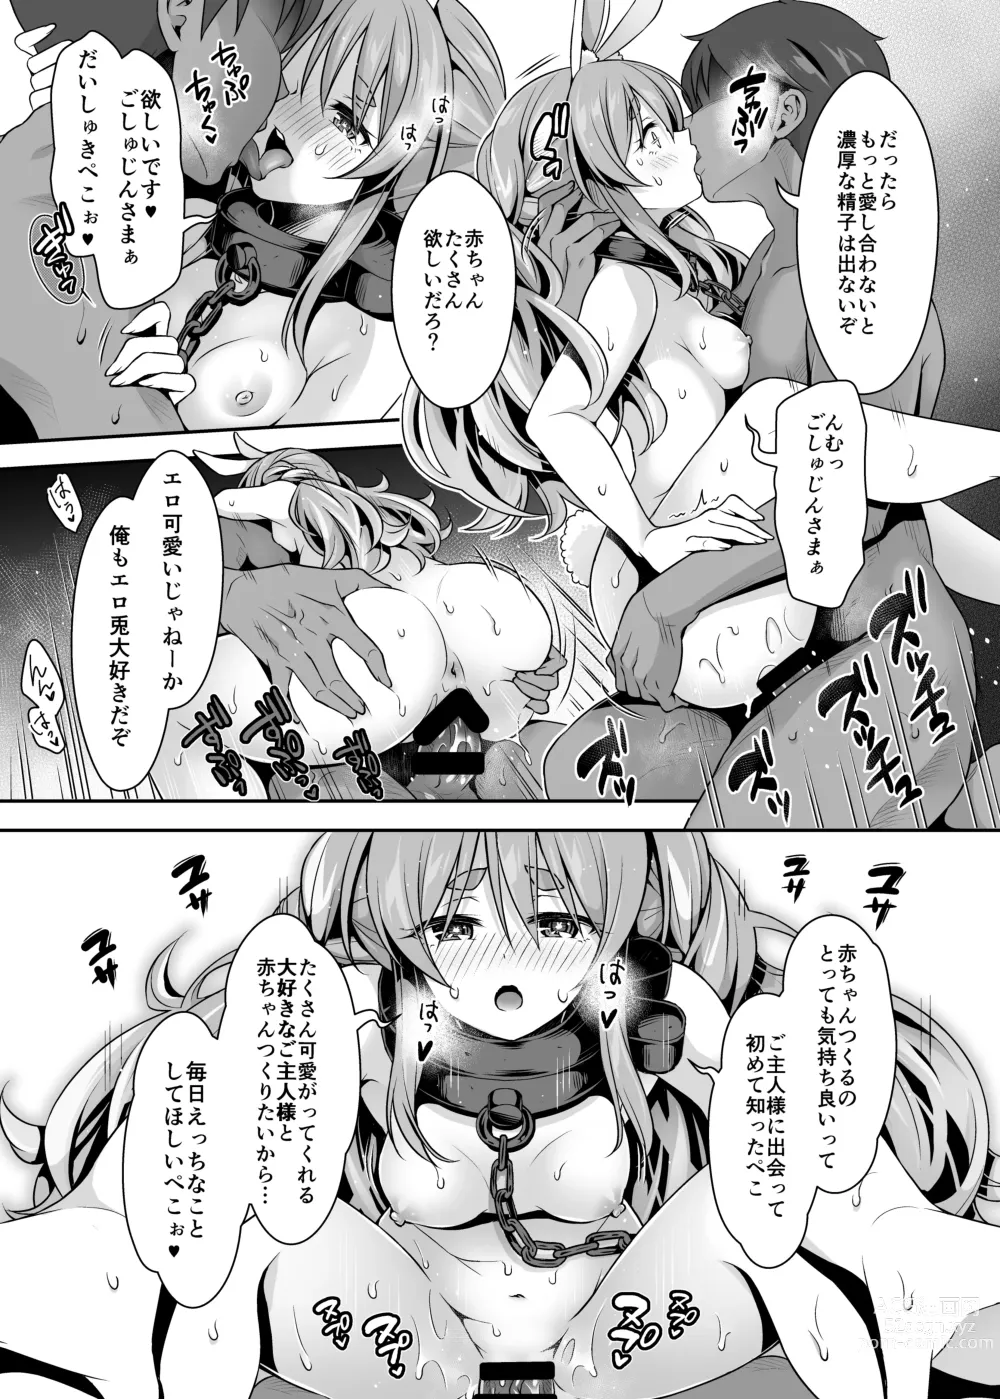 Page 16 of doujinshi Yasei no Usagi ga Nakama ni Naritasou ni Kochira wo Miteiru “Darkness”